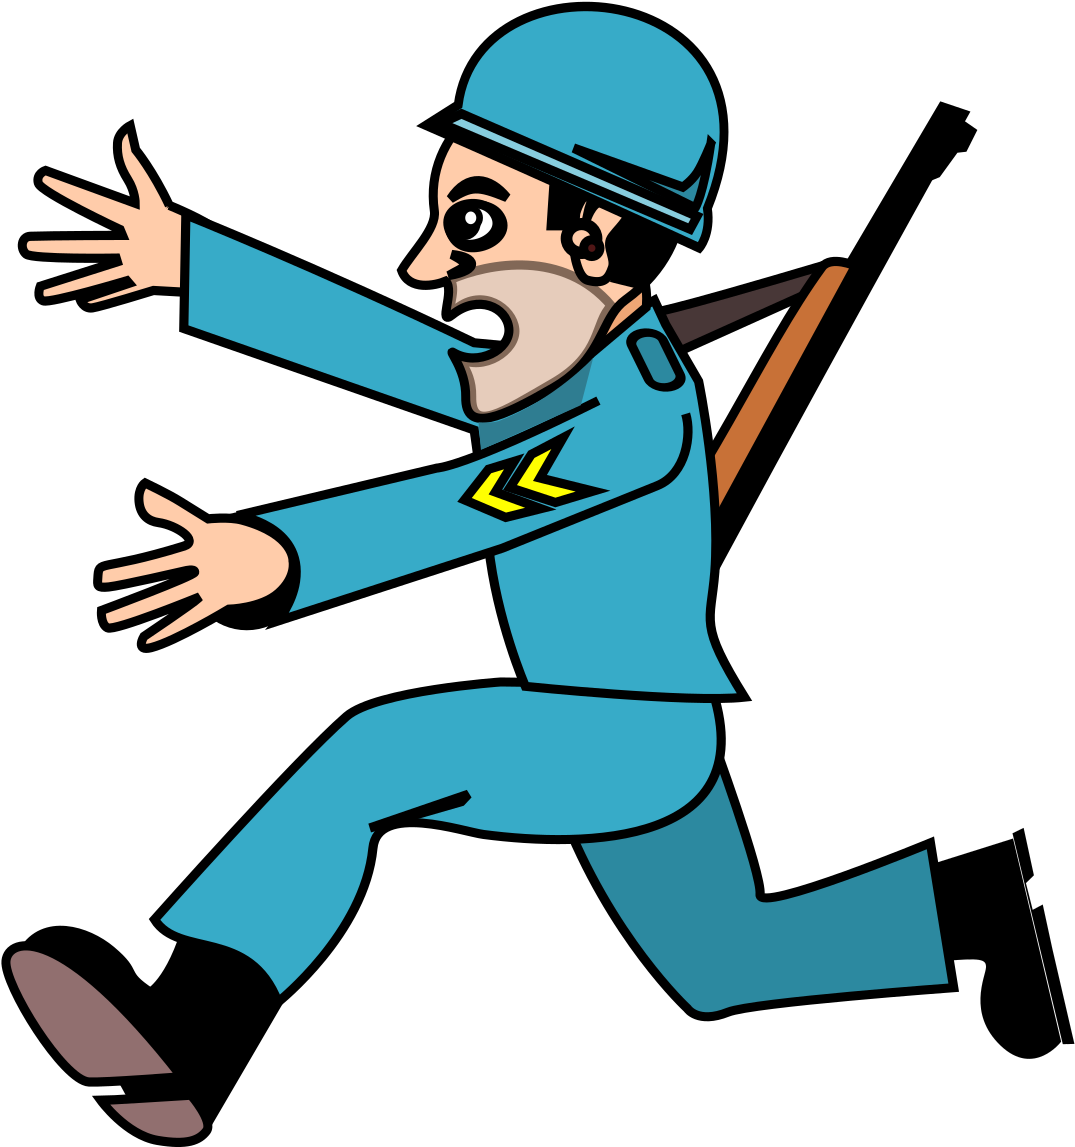 A Cartoon Of A Man In A Blue Uniform Running